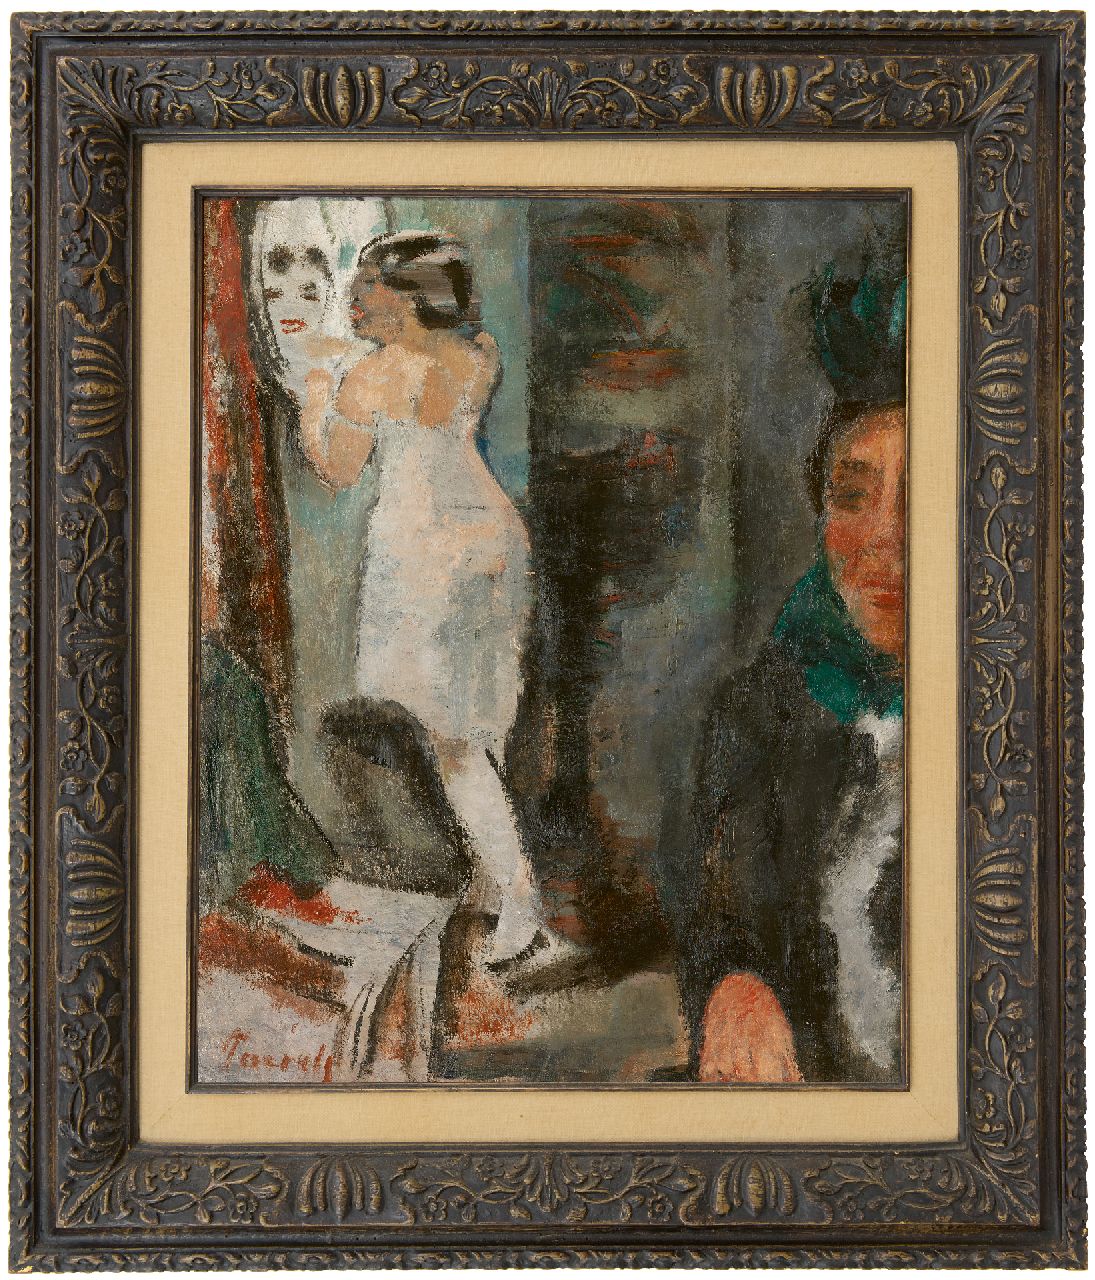 Paerels W.A.  | 'Willem' Adriaan Paerels | Gemälde zum Verkauf angeboten | Frau vor dem Spiegel, Öl auf Leinwand 50,0 x 40,0 cm, Unterzeichnet l.u. und zu datieren um 1922